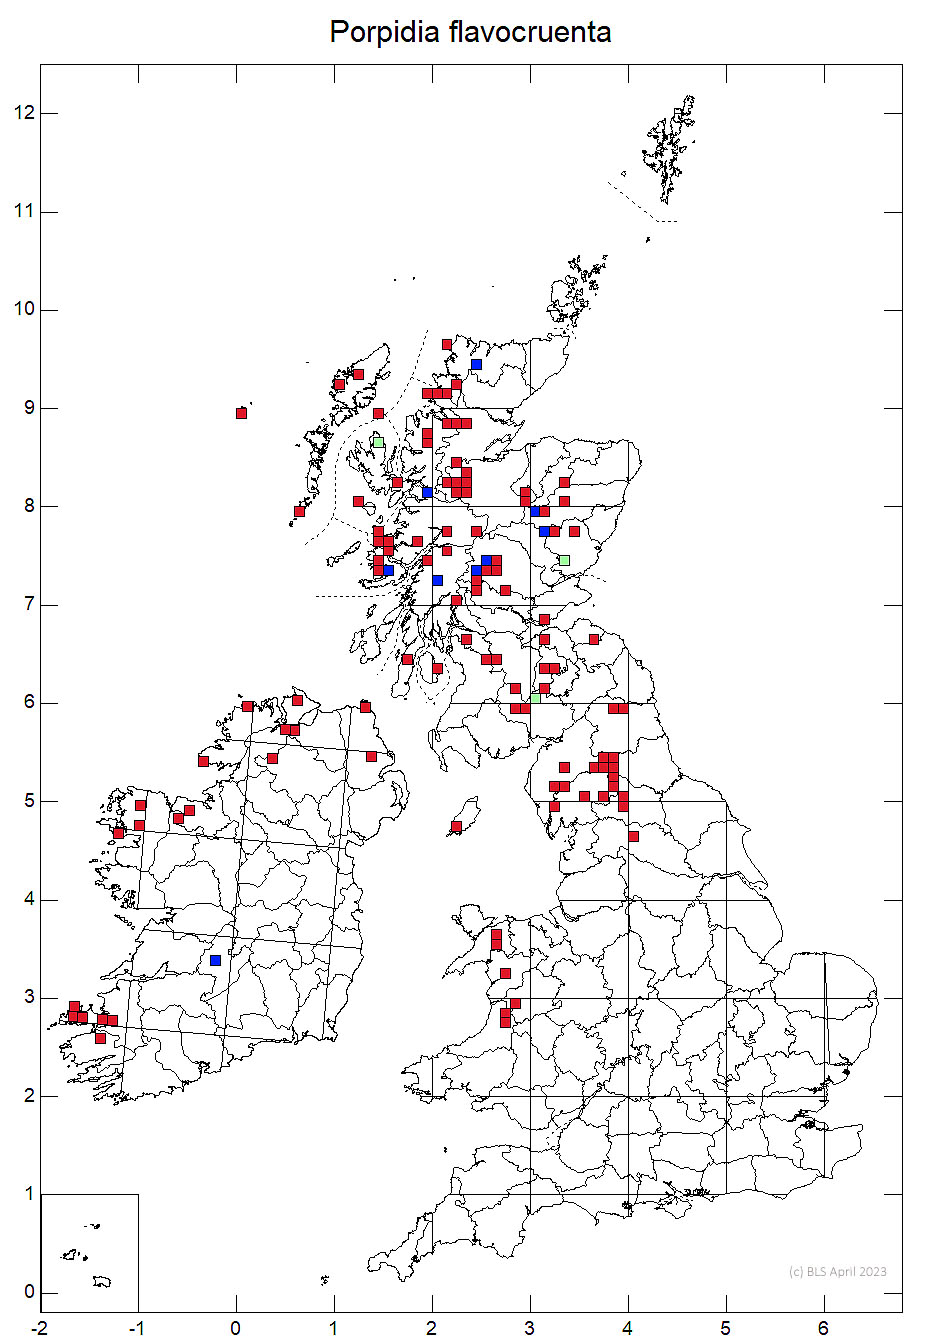 Porpidia flavocruenta 10km sq distribution map